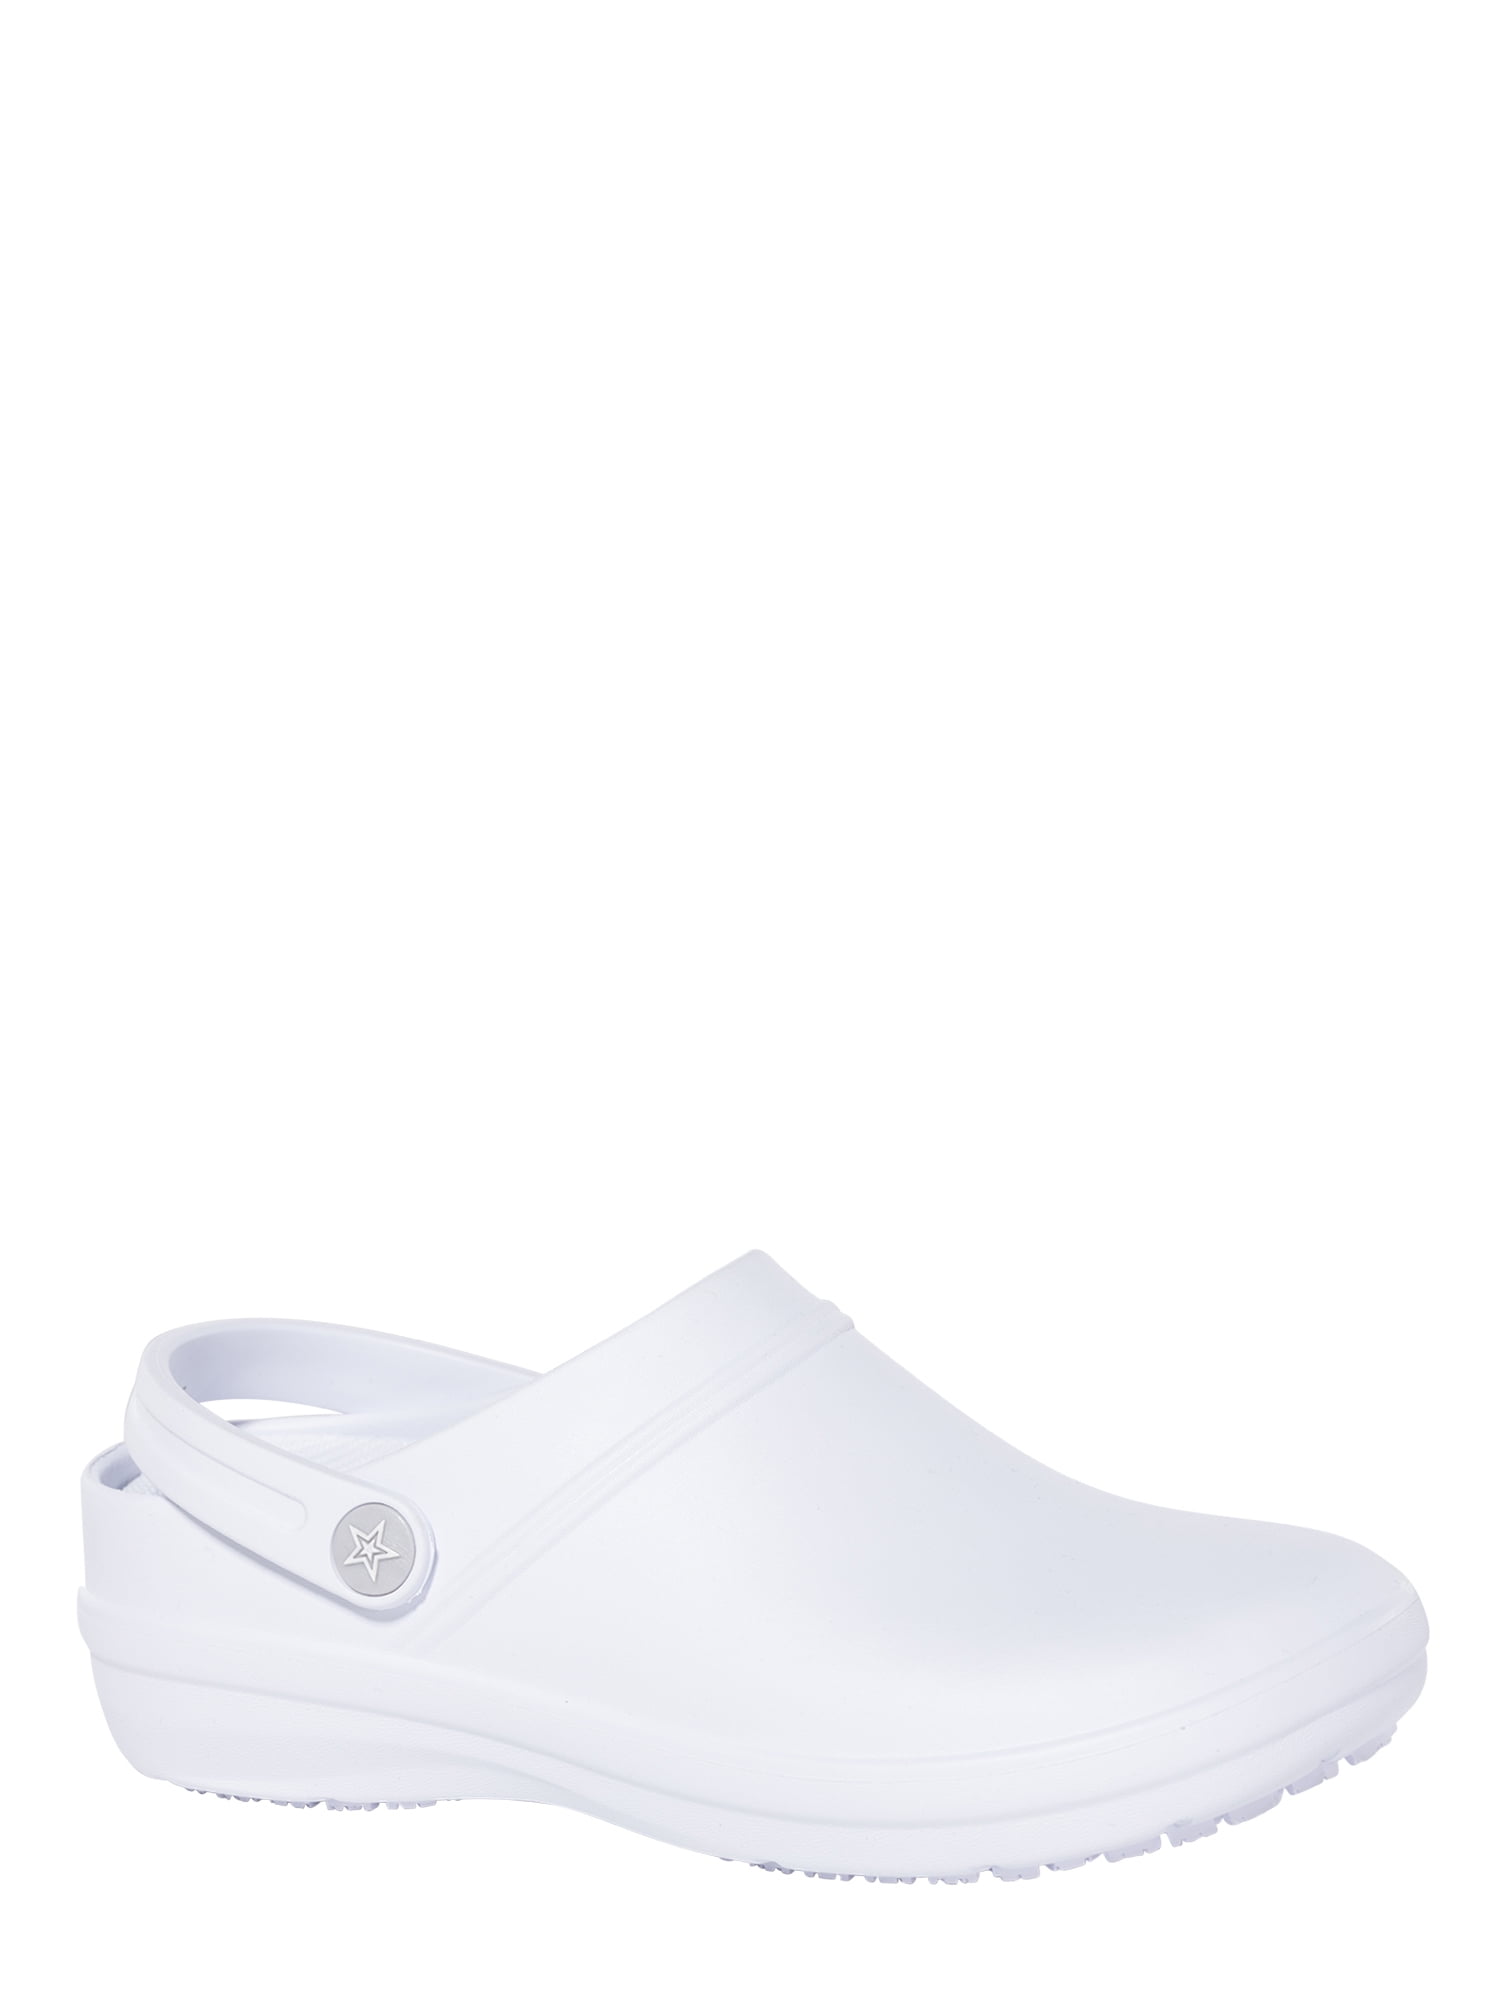 plain white nursing shoes